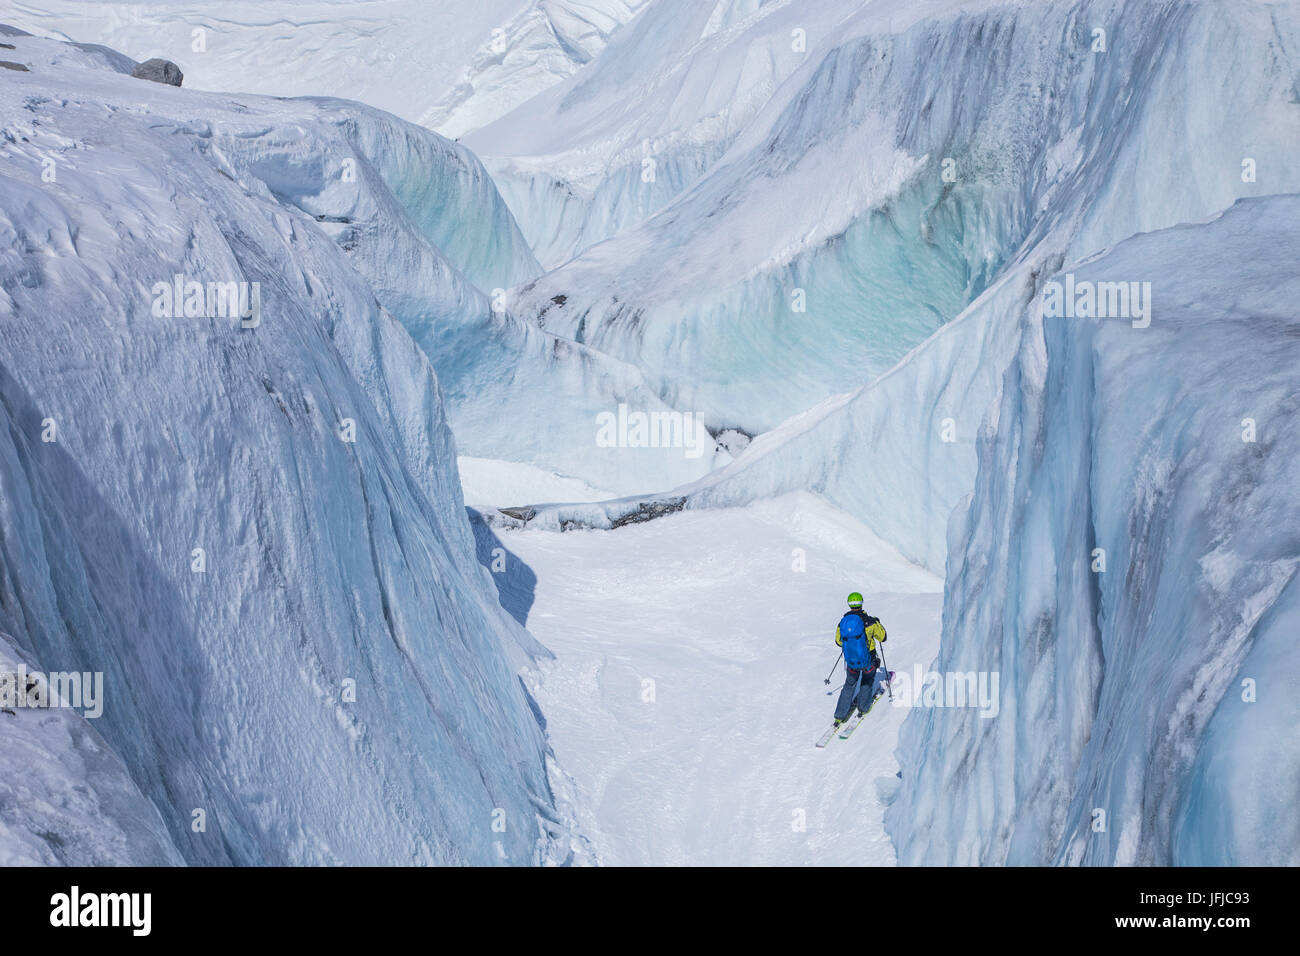 Vallè Blanche glacier - Courmayeur - Chamonix - Alpes - passage de l'Europe Banque D'Images